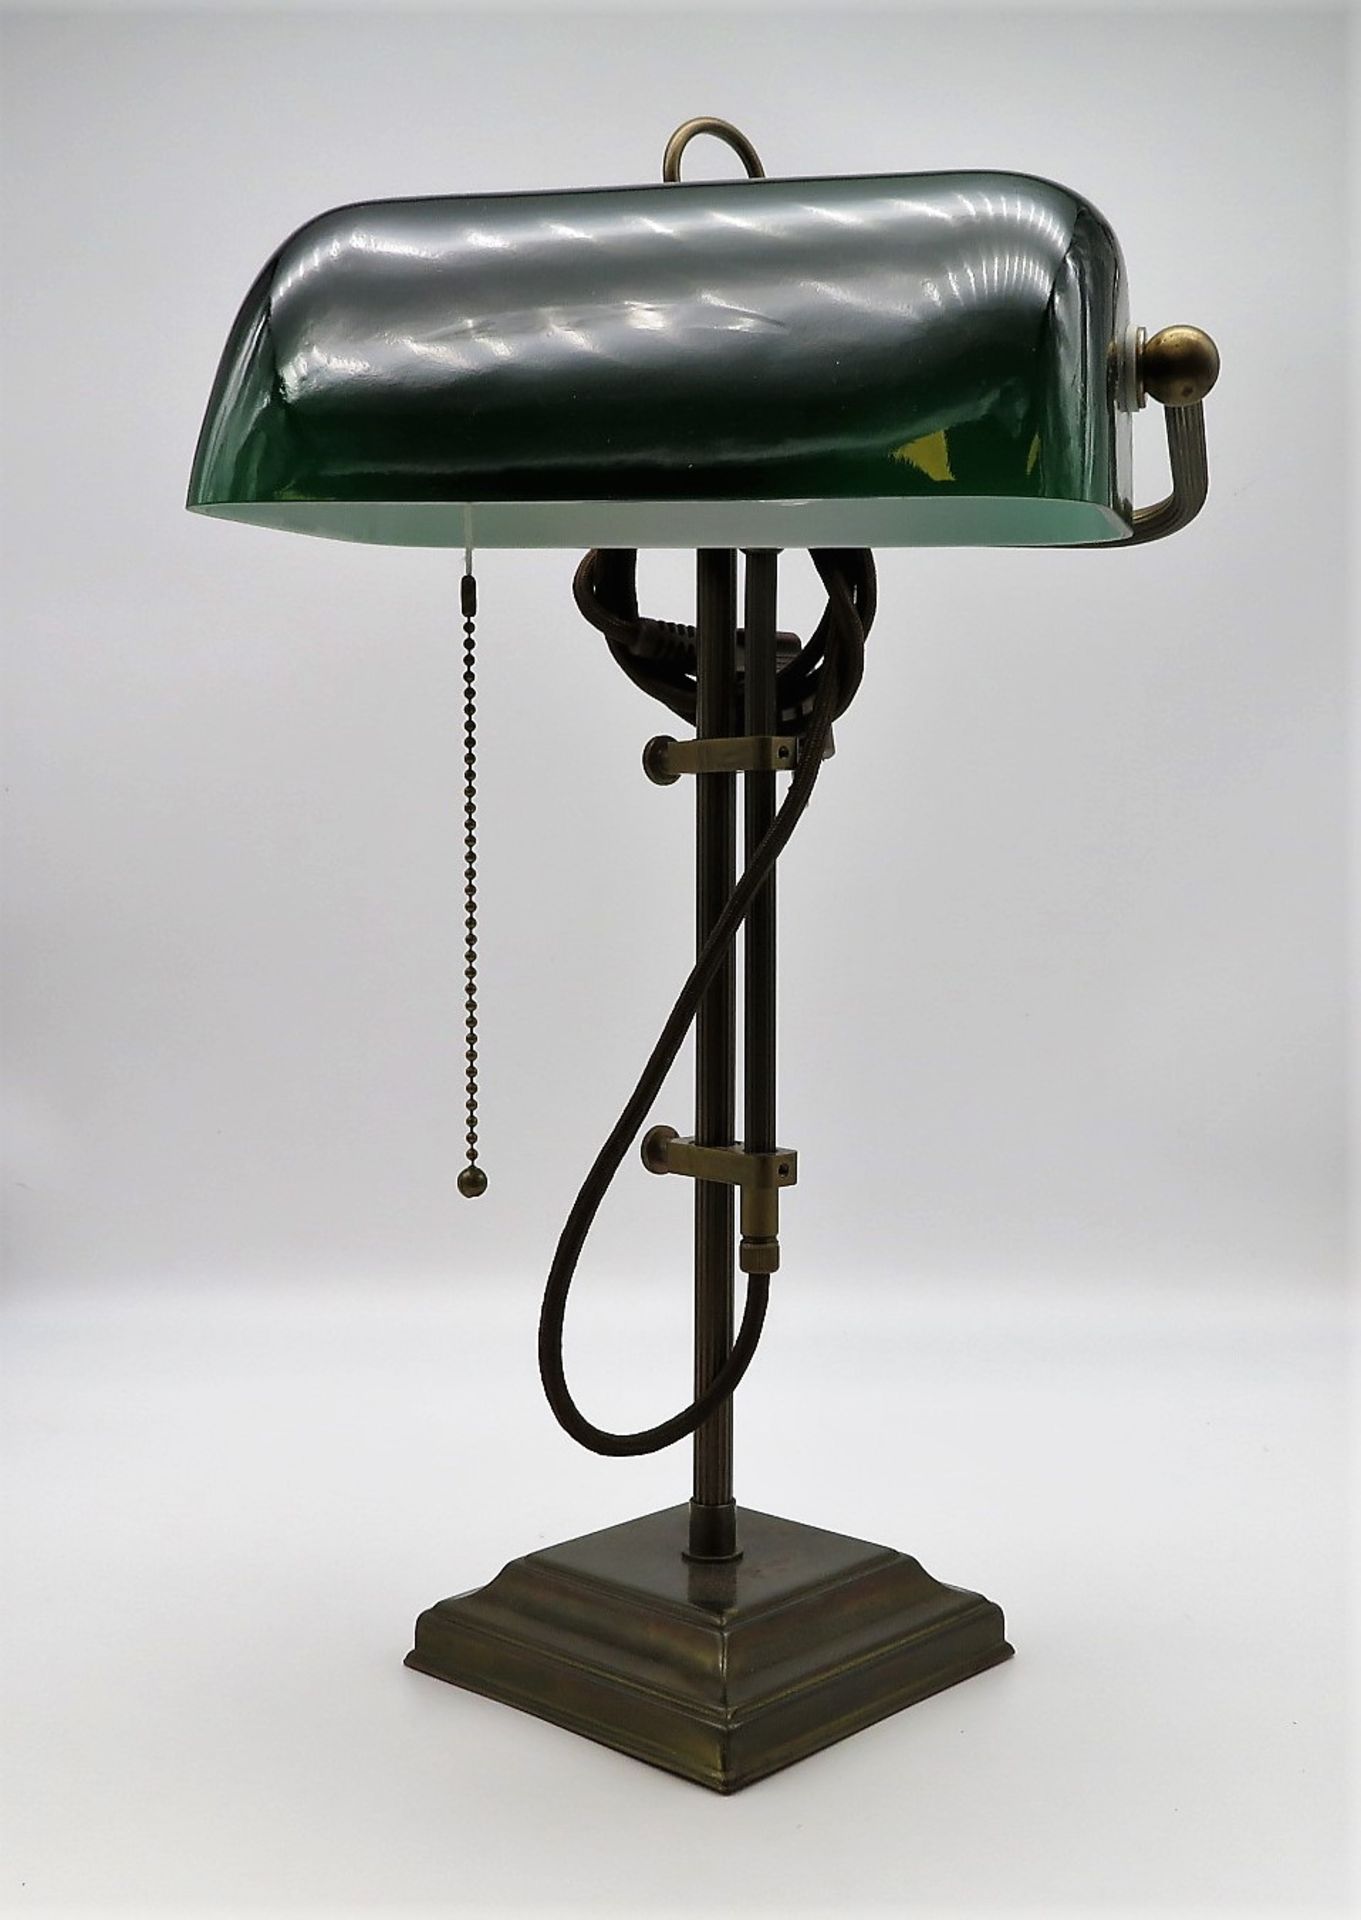 Büro-Tischlampe, Messing mit grünem Glasschirm, 20. Jahrhundert, h 49 cm, d 28 cm.